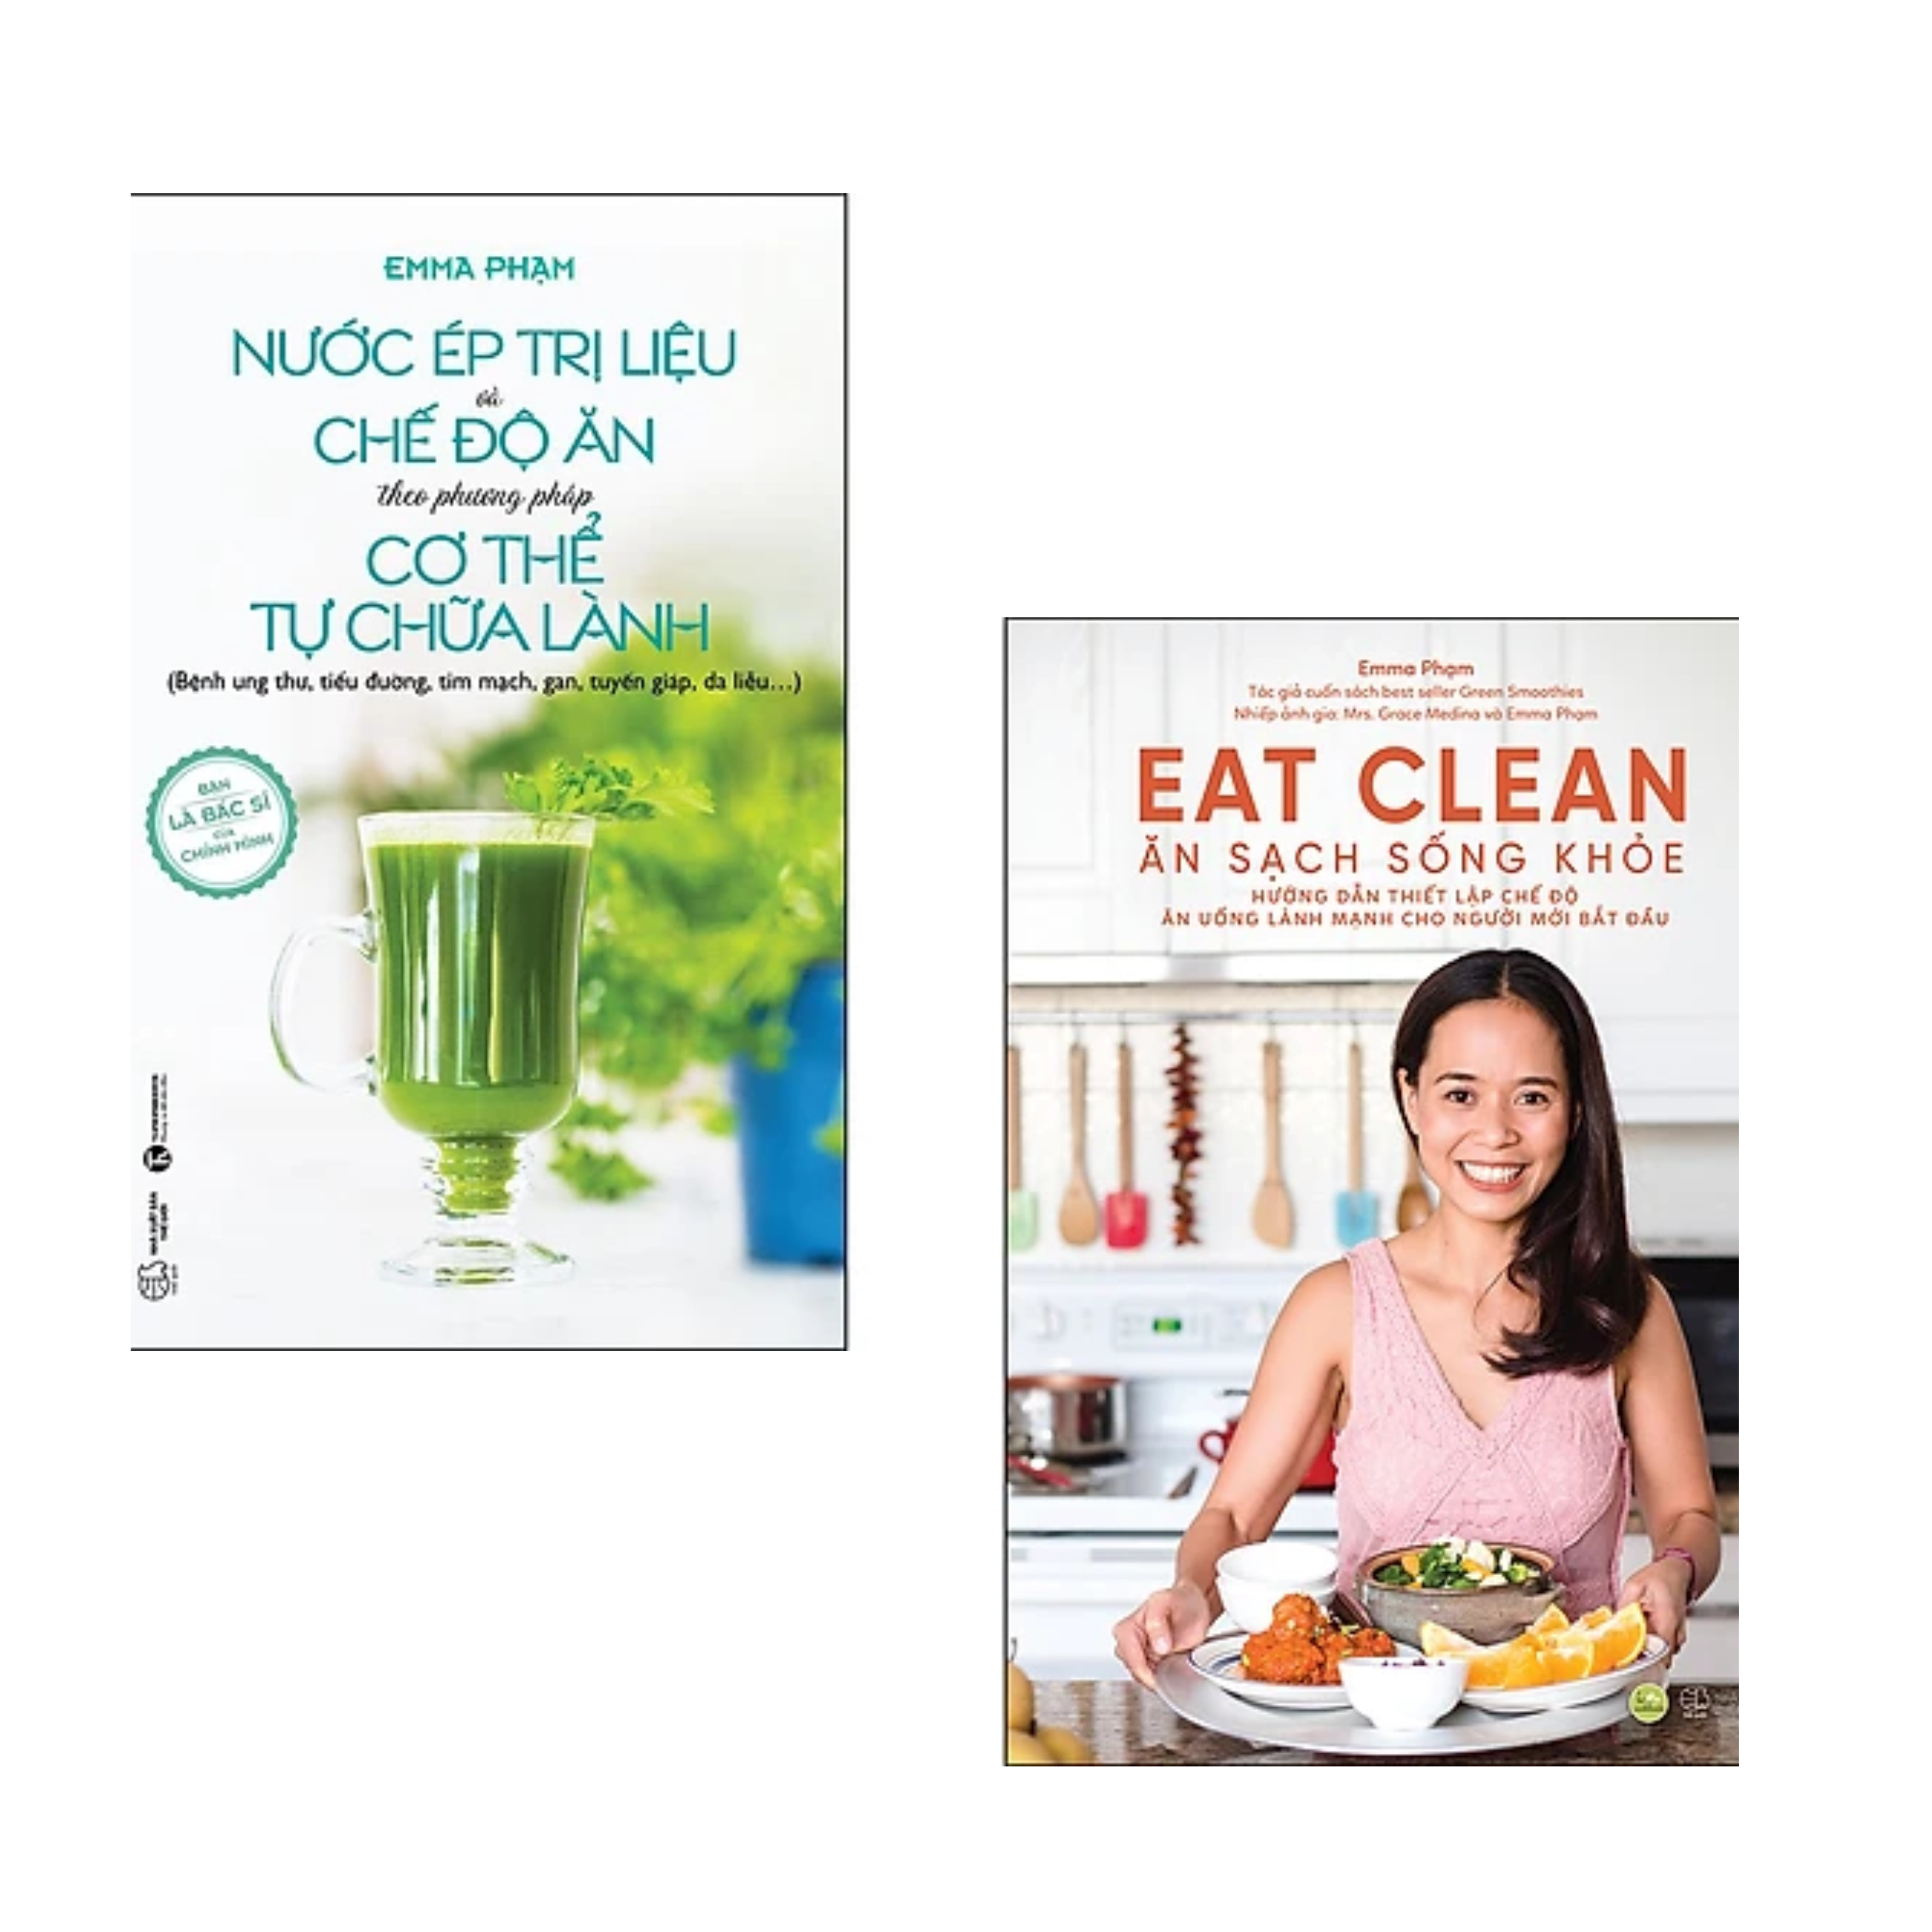 Combo 2 cuốn sách Chăm Sóc Sức Khỏe: Nước Ép Trị Liệu Và Chế Độ Ăn Theo Phương Pháp Cơ Thể Tự Chữa Lành + Eat Clean - Ăn Sạch Sống Khỏe